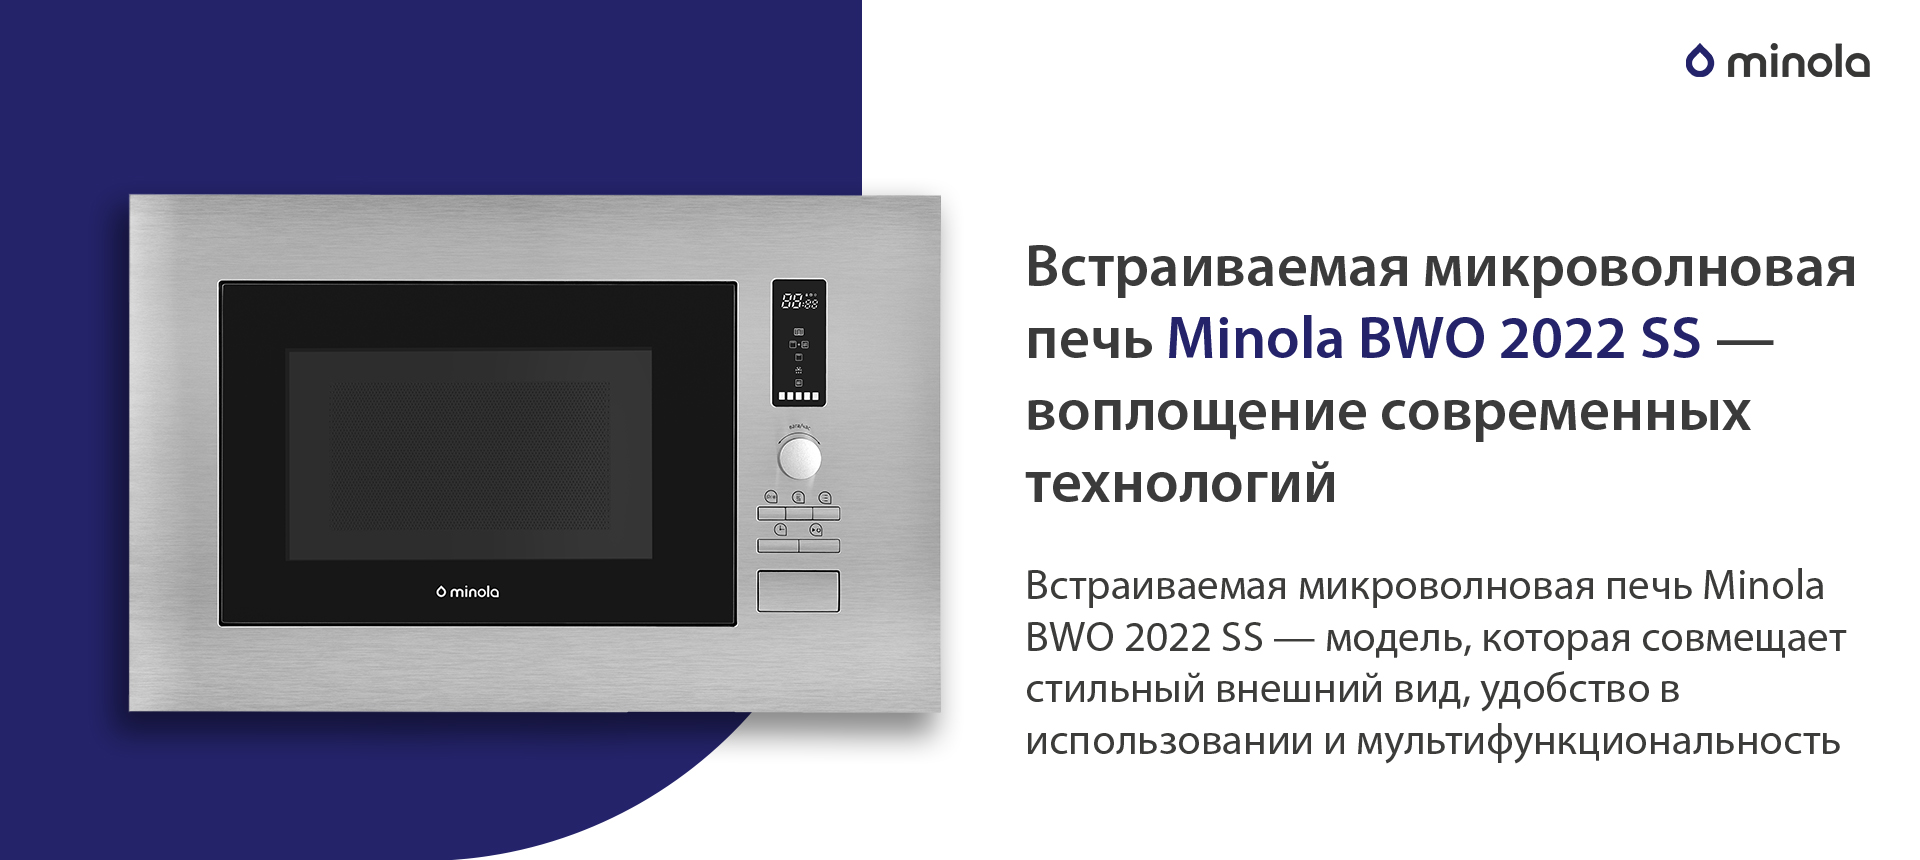 Встраиваемая микроволновая печь Minola BWO 2022 SS — модель, которая совмещает стильный внешний вид, удобство в использовании и мультифункциональность